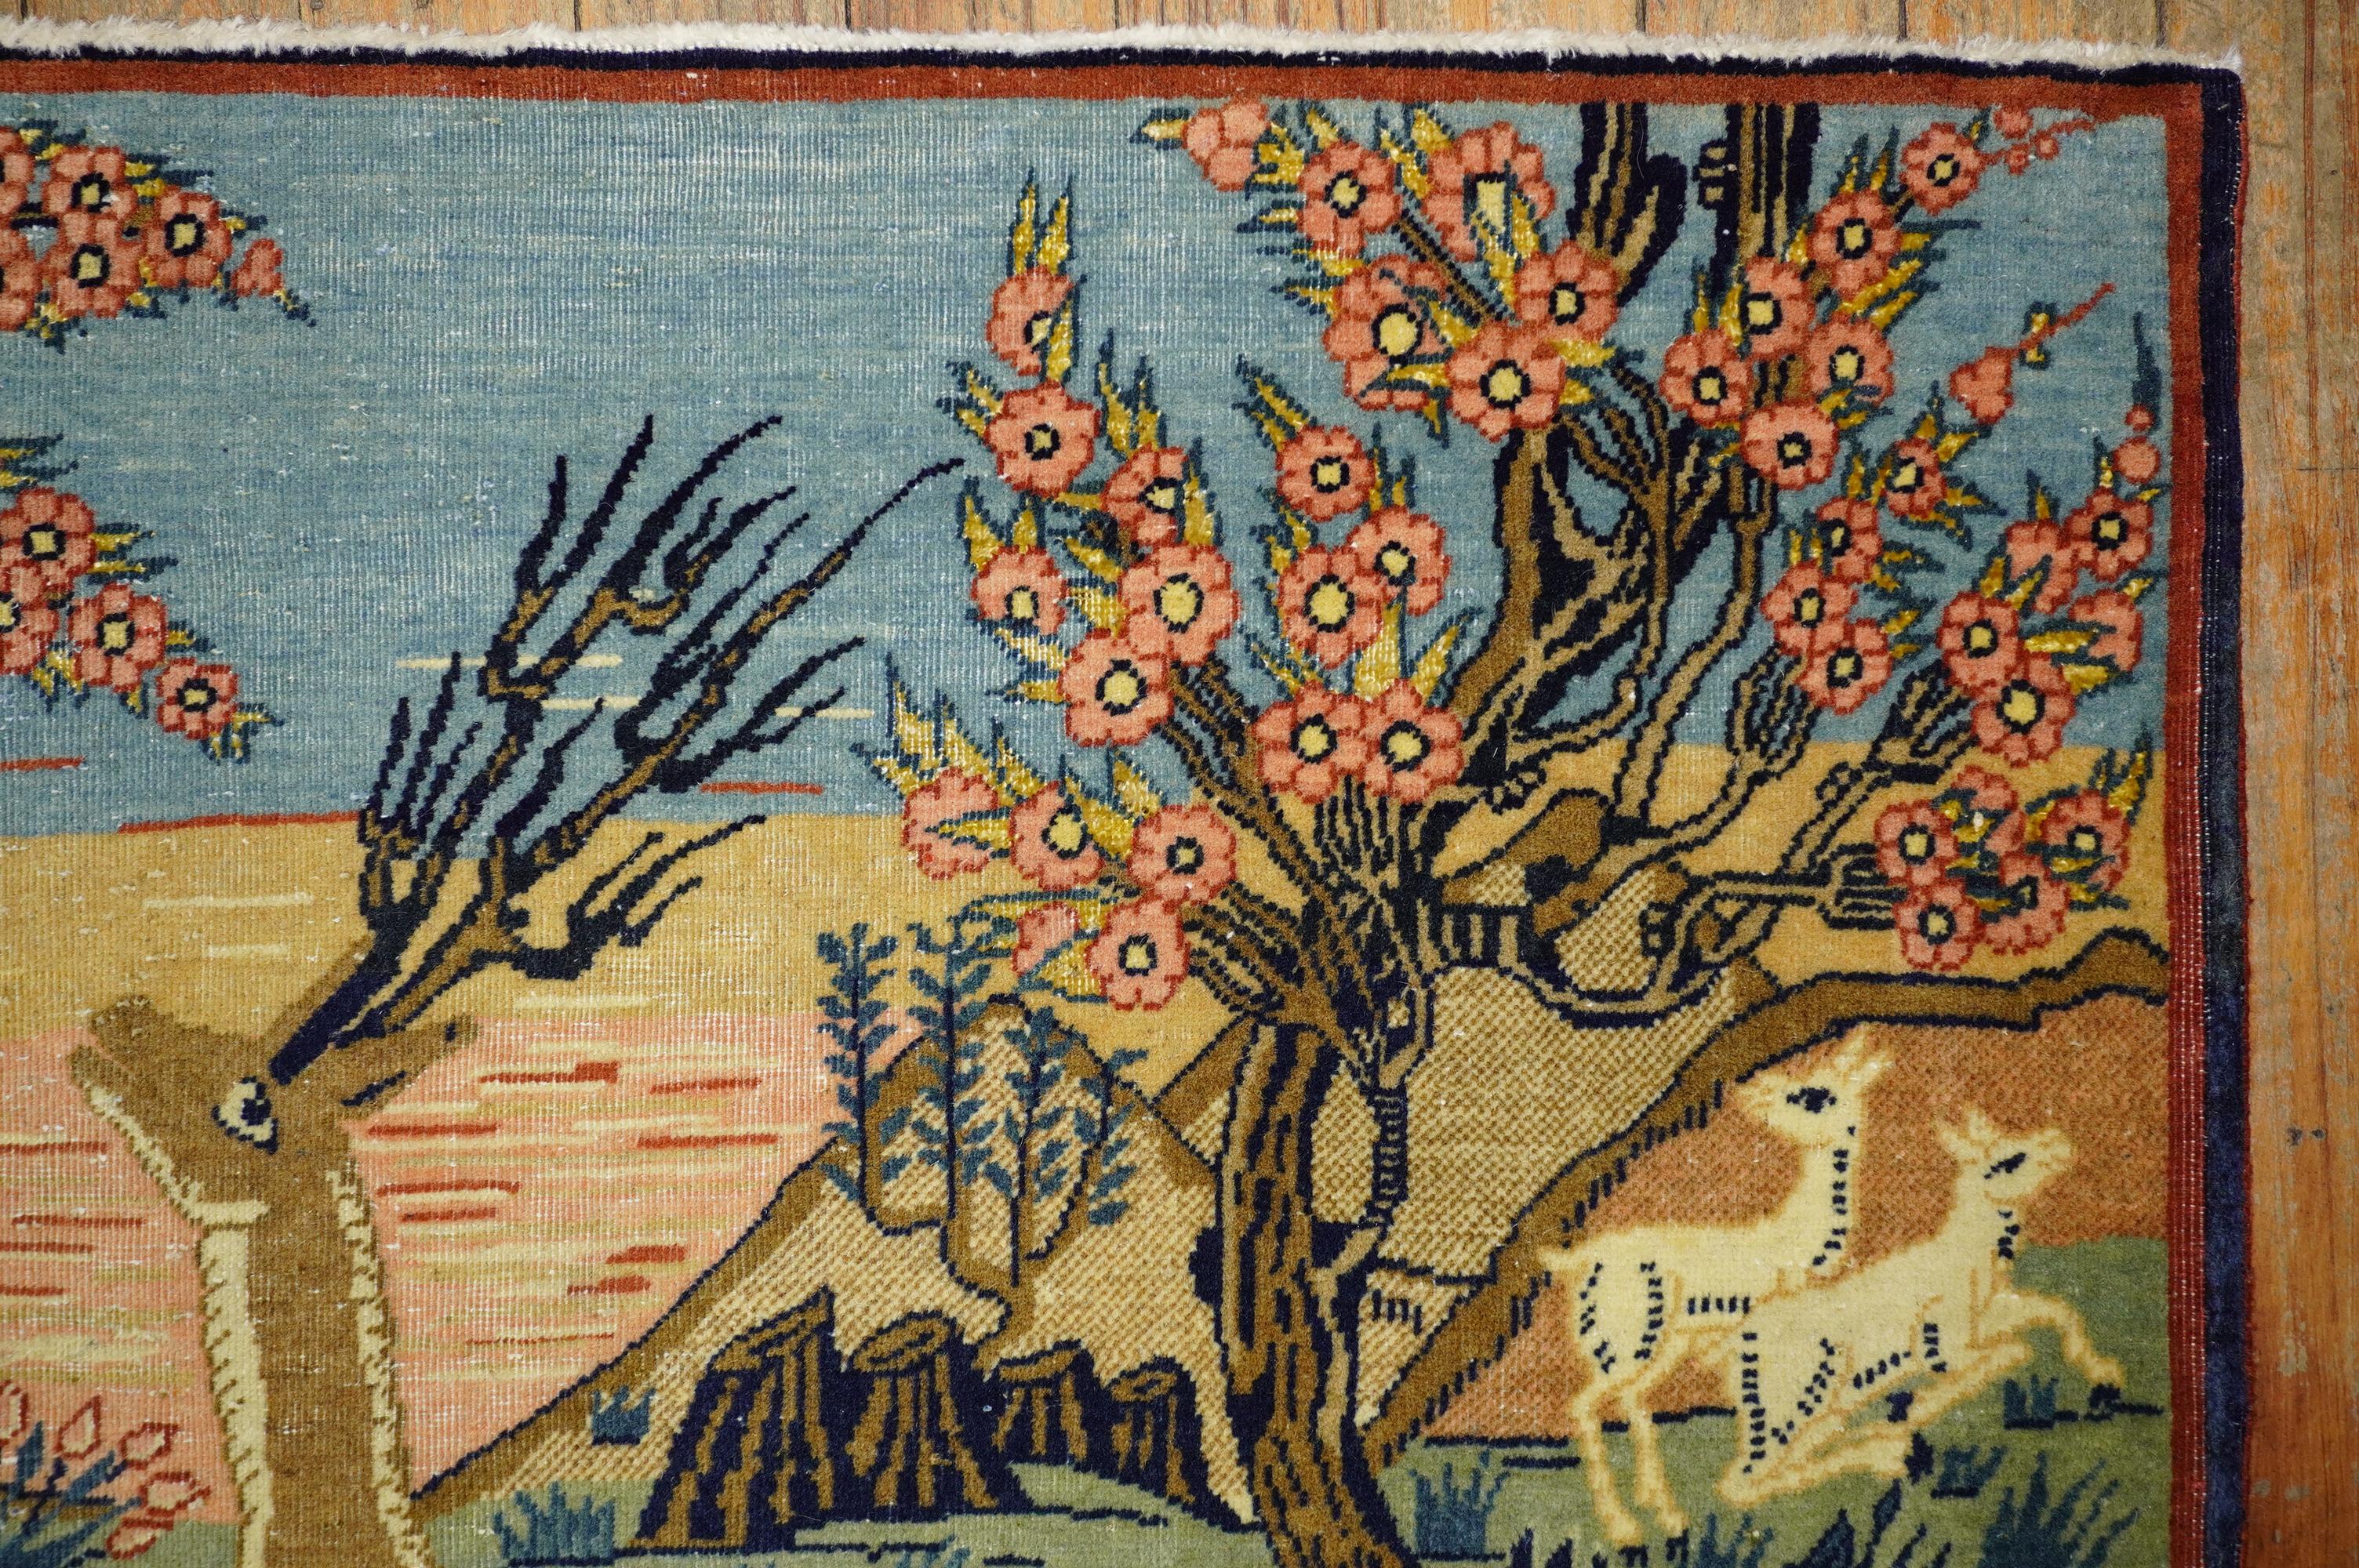 Fein gewebter botanischer Kashan-Bilderteppich aus dem frühen 20. Ein brauner Hirsch, 2 Kaninchen in einer schönen Umgebung.

Einzelheiten
Teppich nein.	j1868
Größe	2' 1